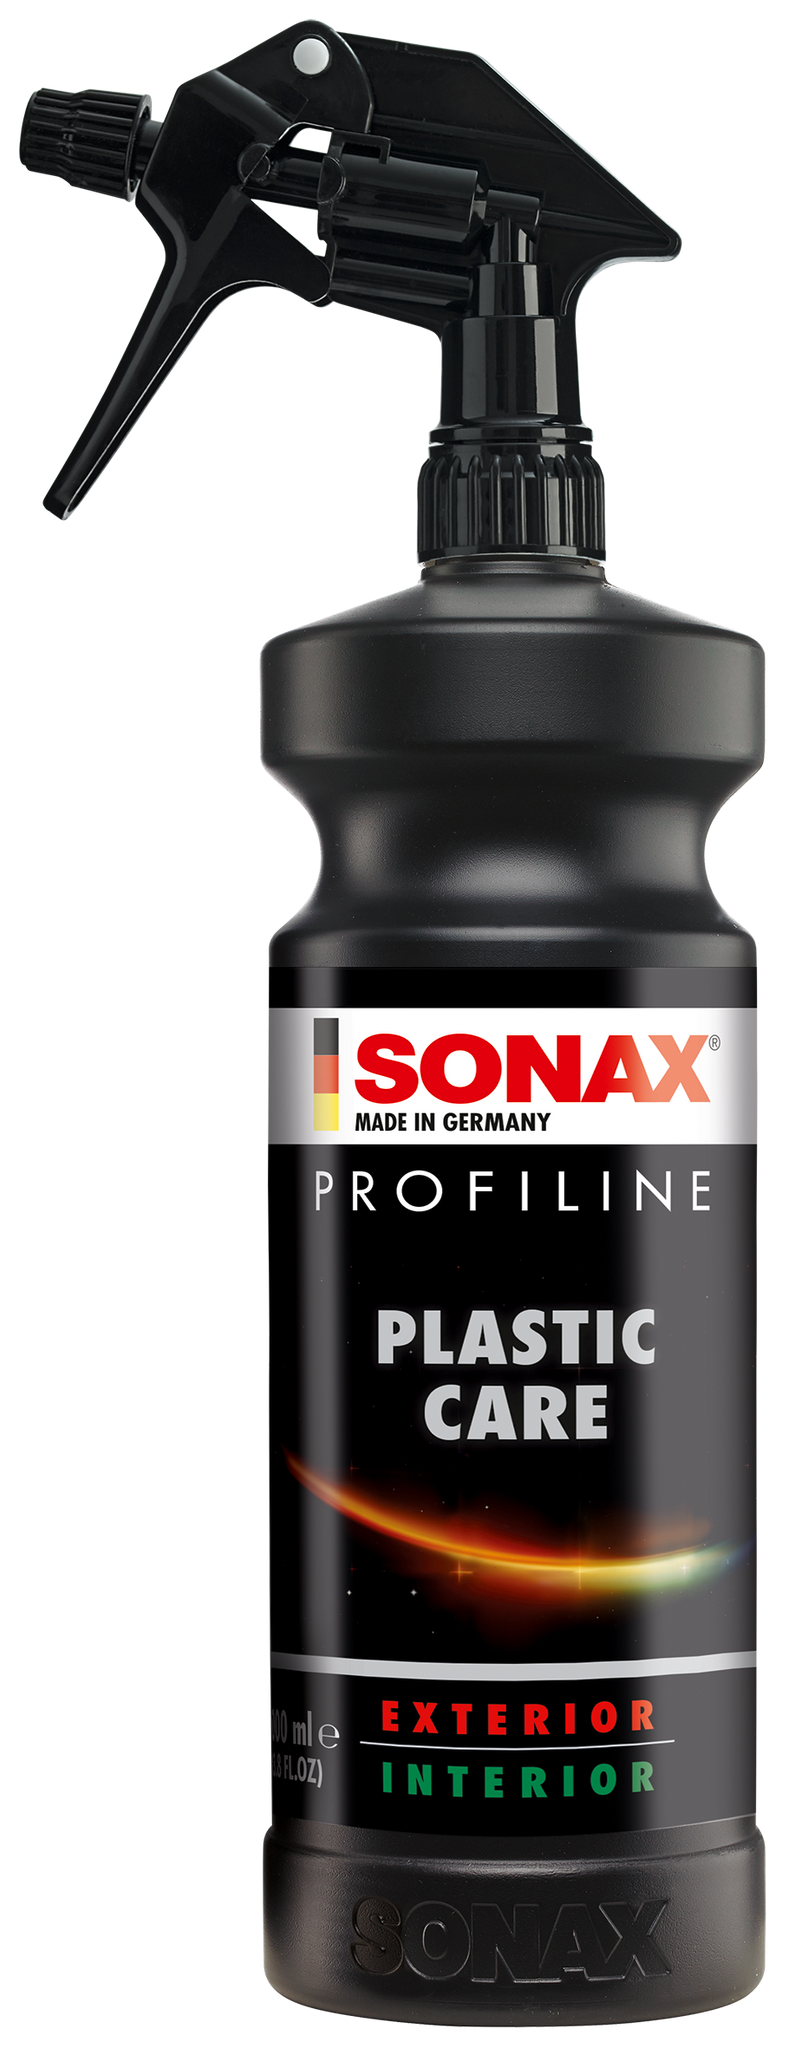 Sonax Profiline Plastic Care - Exterior & Interior 1 L